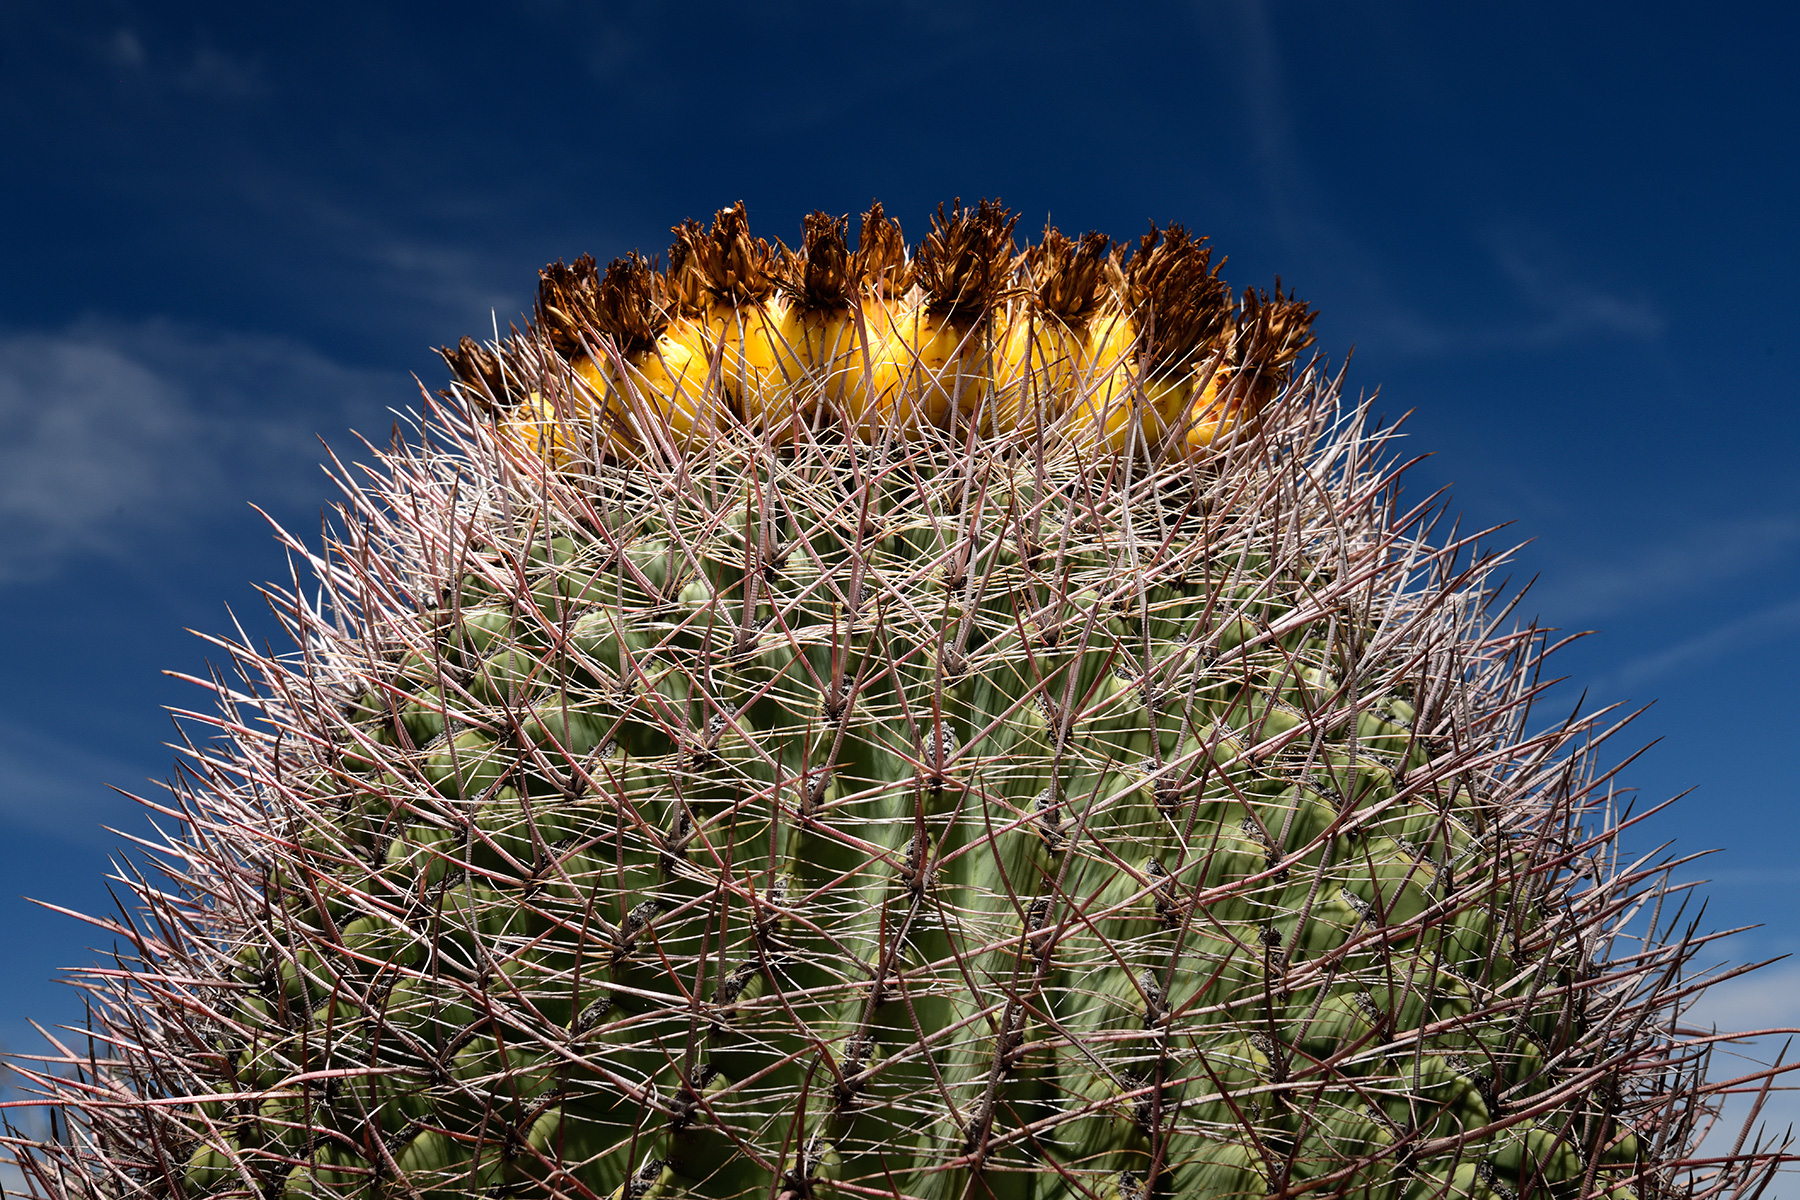 Parc National de Saguaro (Arizona, USA) - "Barrel cactus" avec couronne de fruits jaunes au sommet